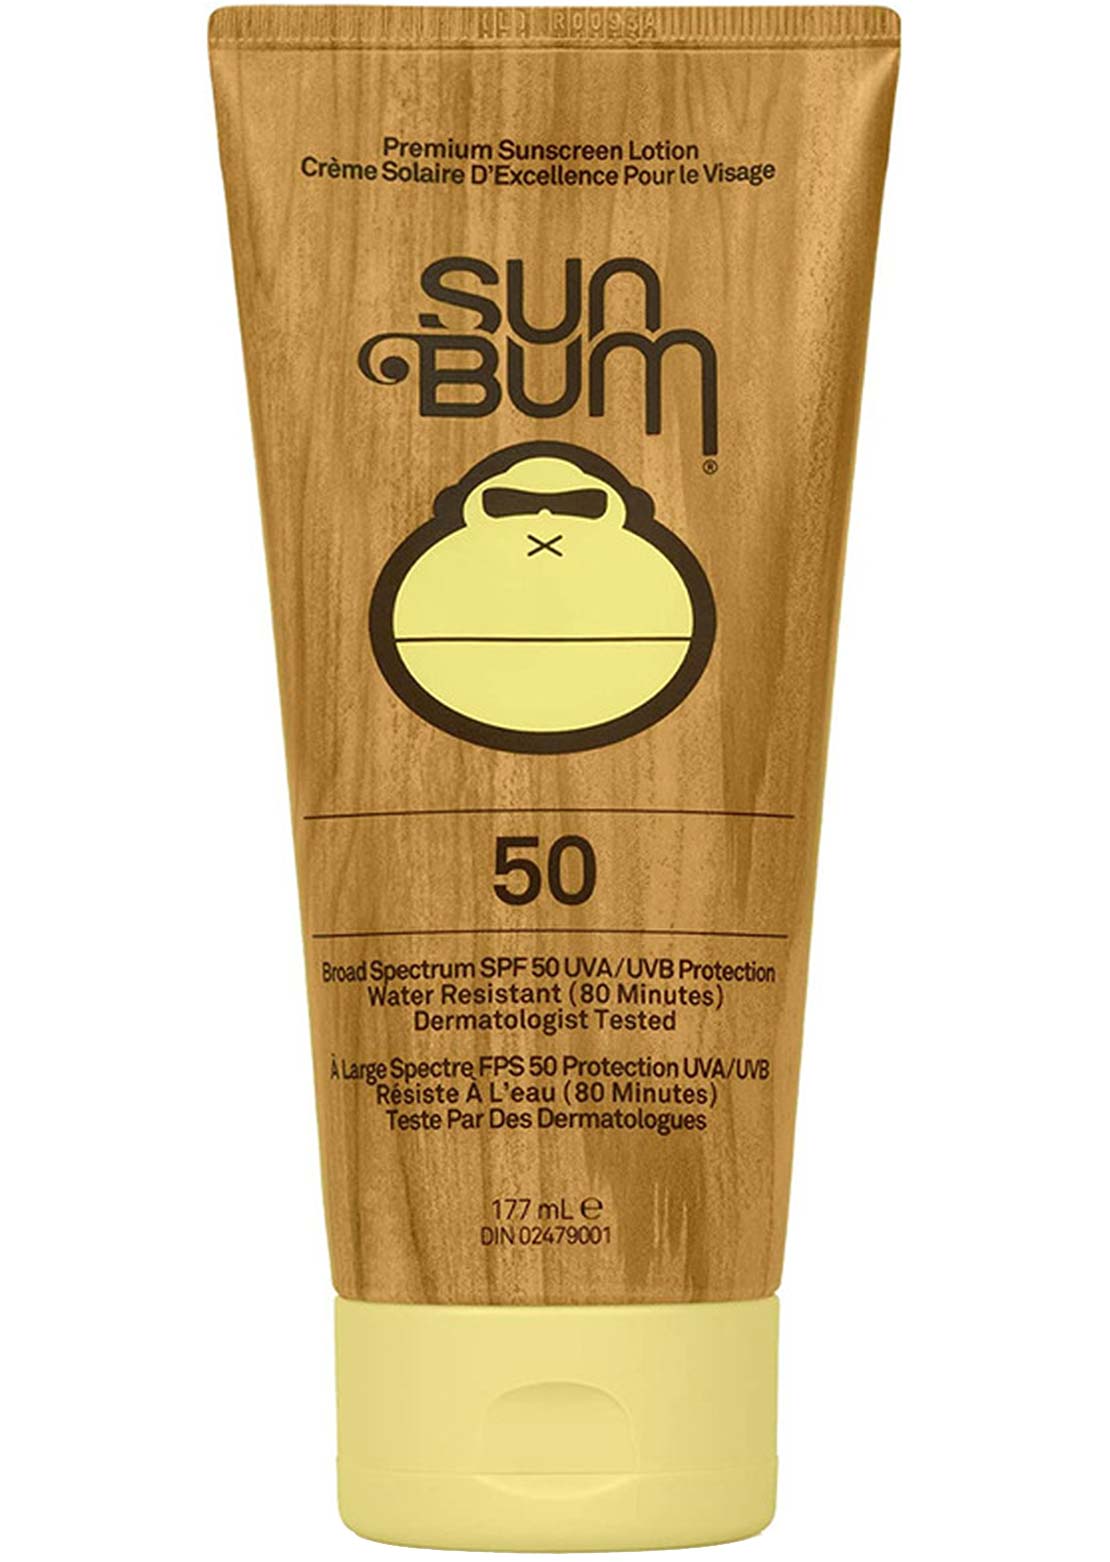 Sun Bum Sunscreen SPF 50 Lotion